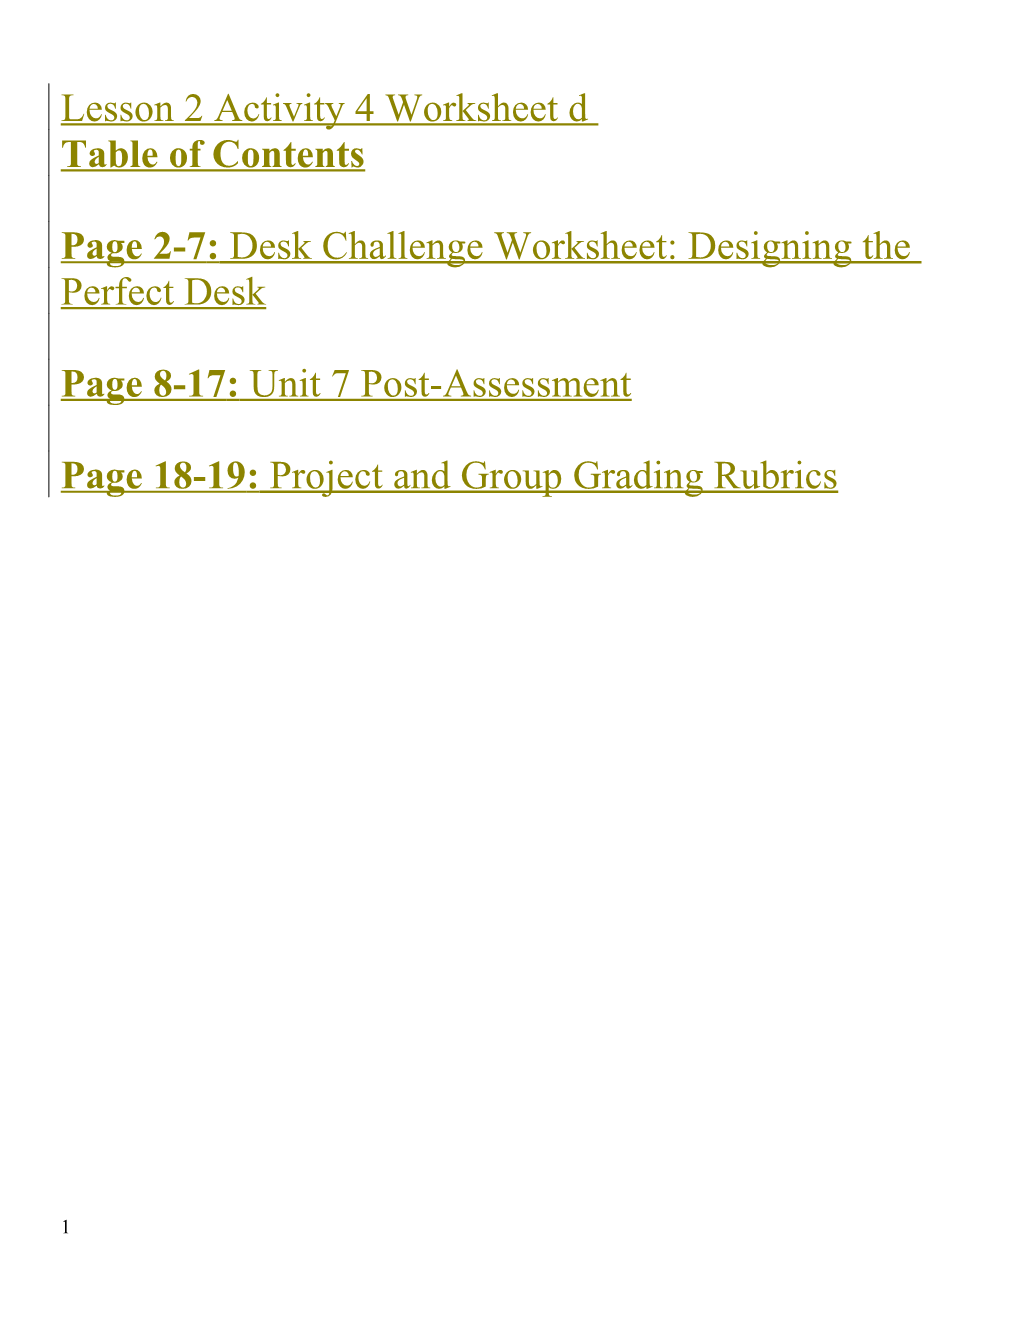 Page 2-7: Desk Challenge Worksheet: Designing the Perfect Desk